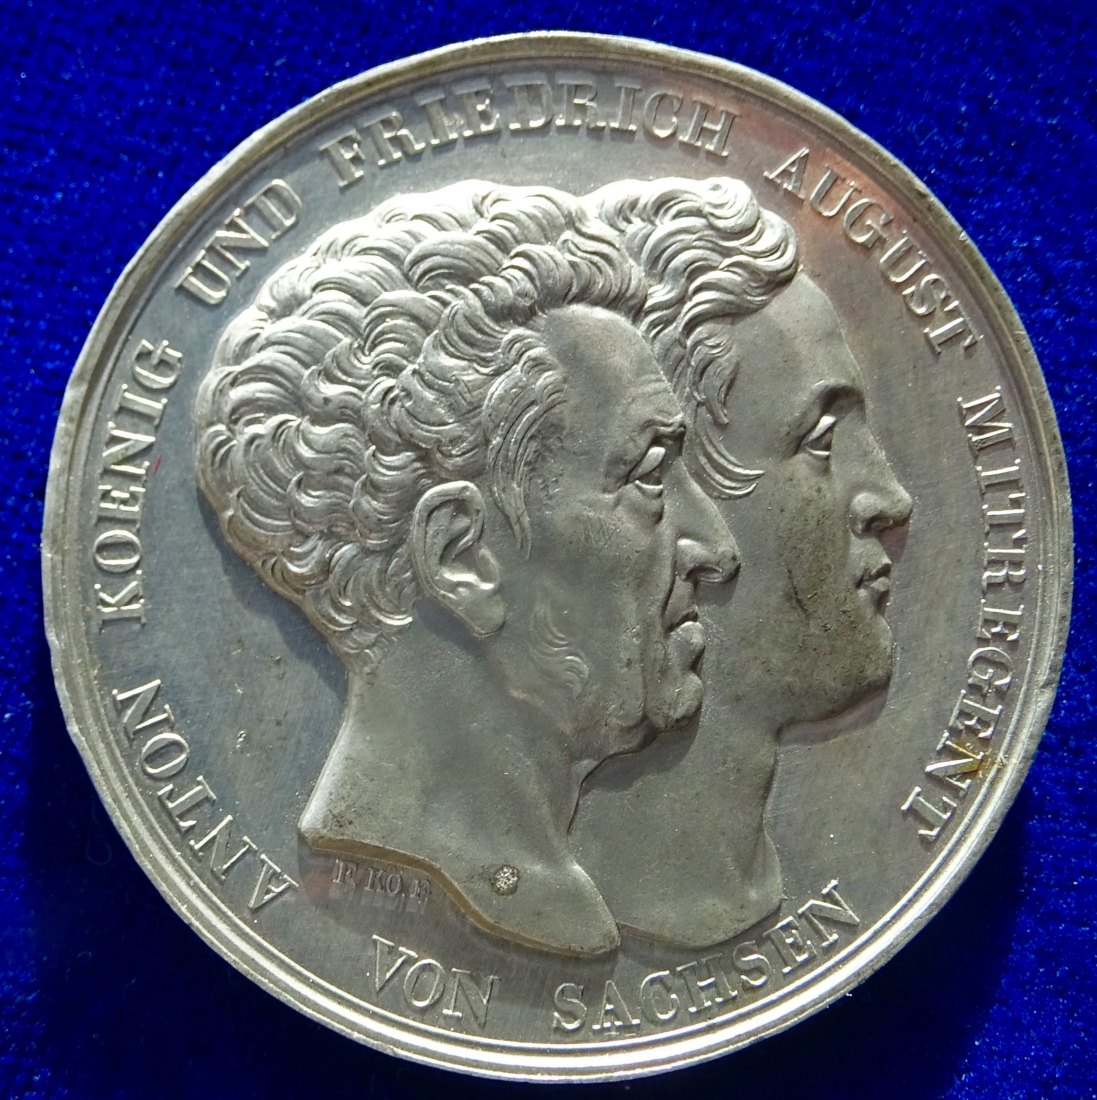  Königreich Sachsen Medaille 1831 auf die Neue Verfassung, Zinnabschlag   